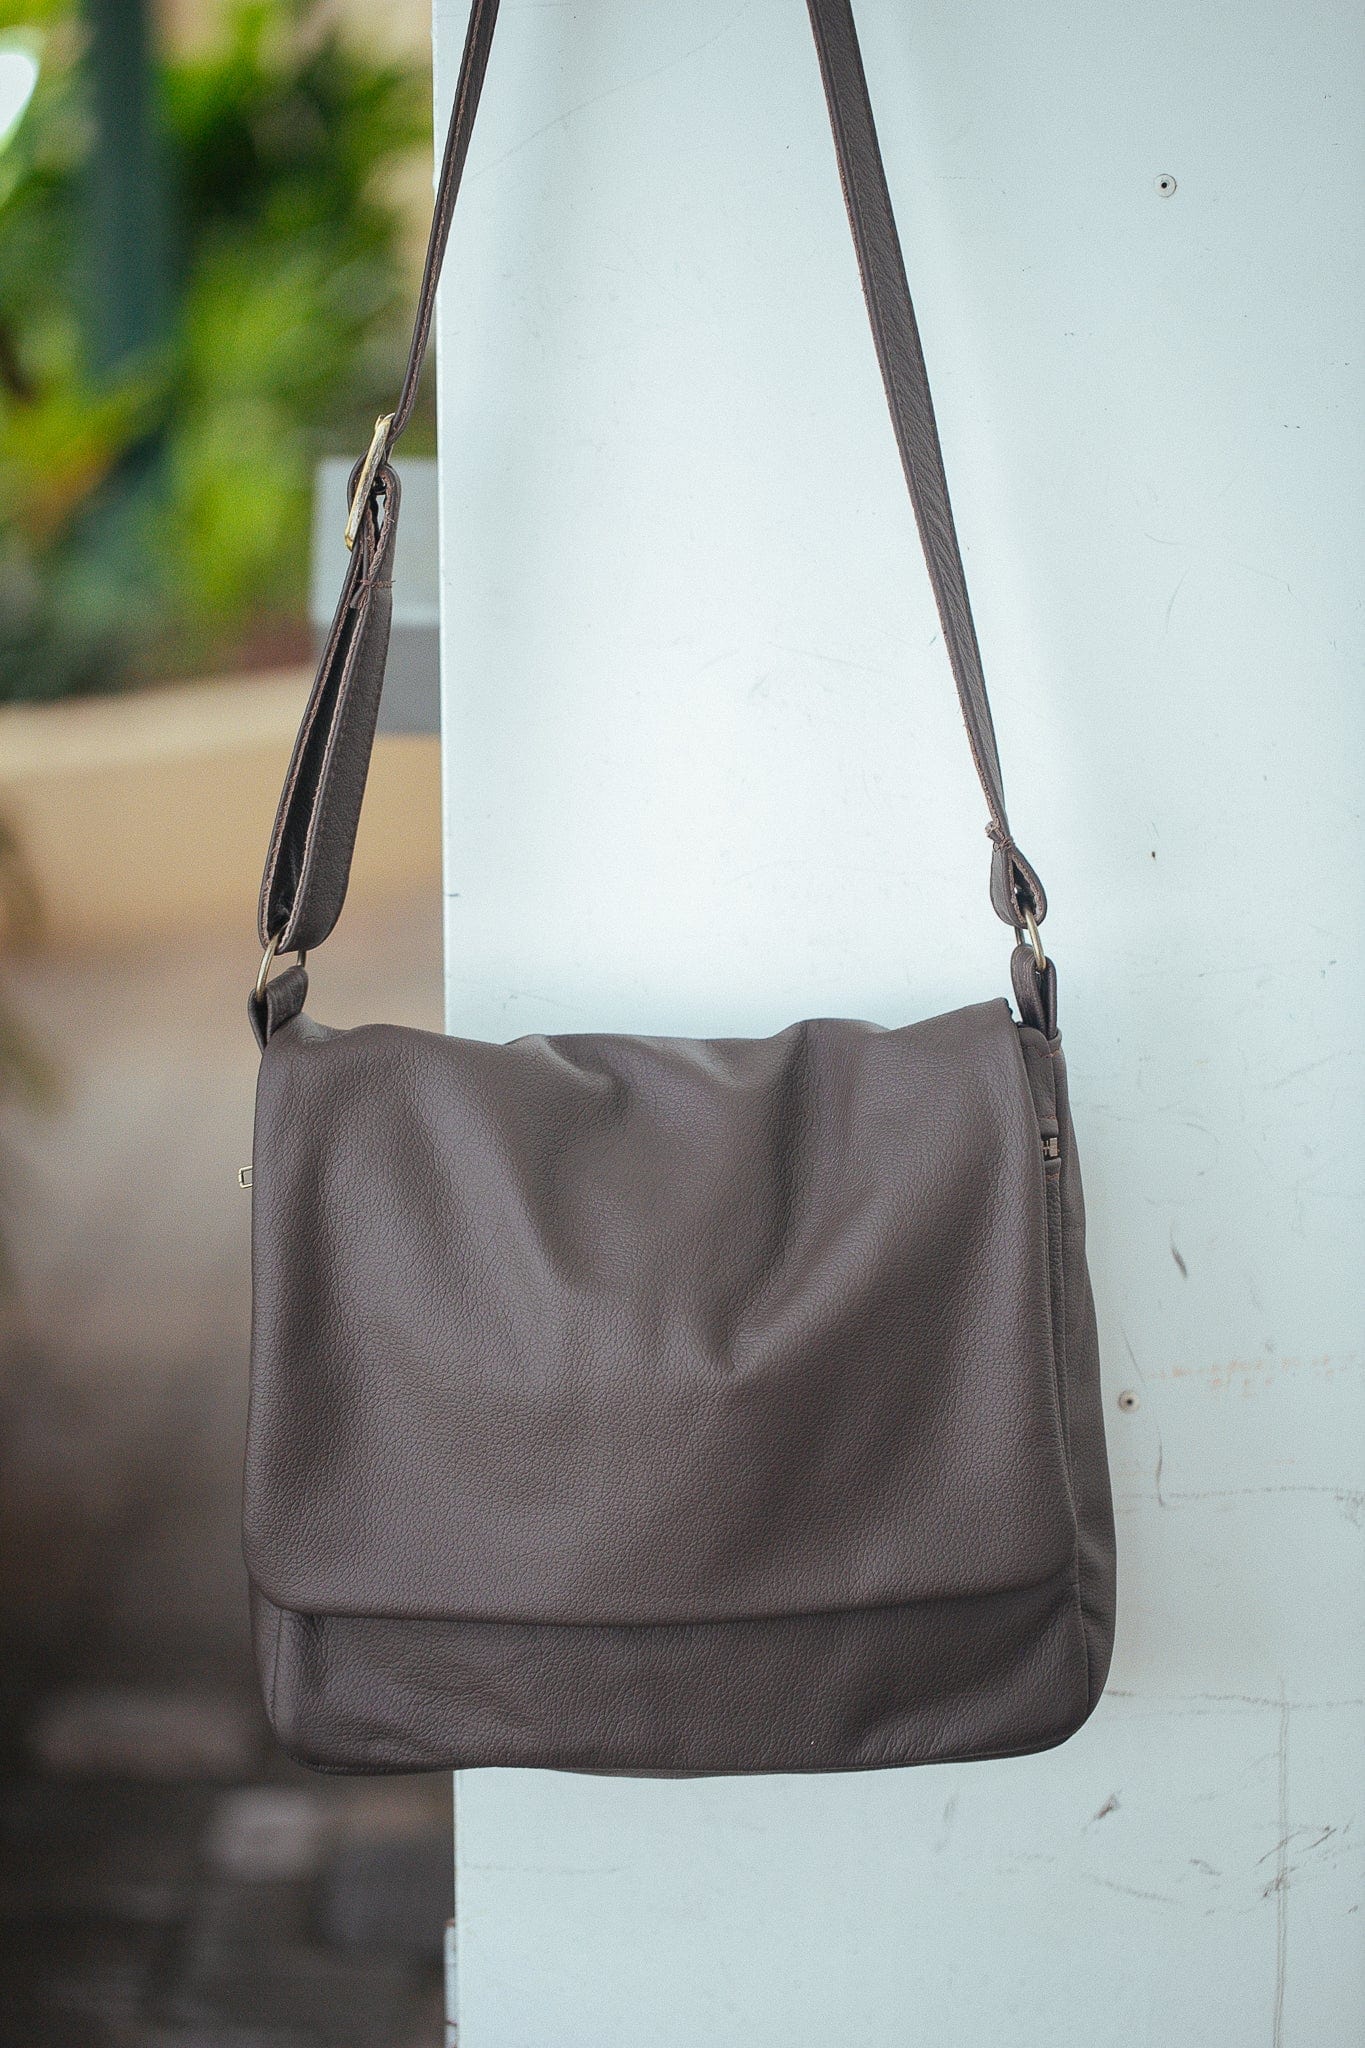 The Real McCaul Shoulder Bags Dark Brown Universal Satchel Bag - Medium - Cowhide Australian Made Australian Owned Leather Satchel Bag- Australian Made in Kangaroo and Cowhide Leather